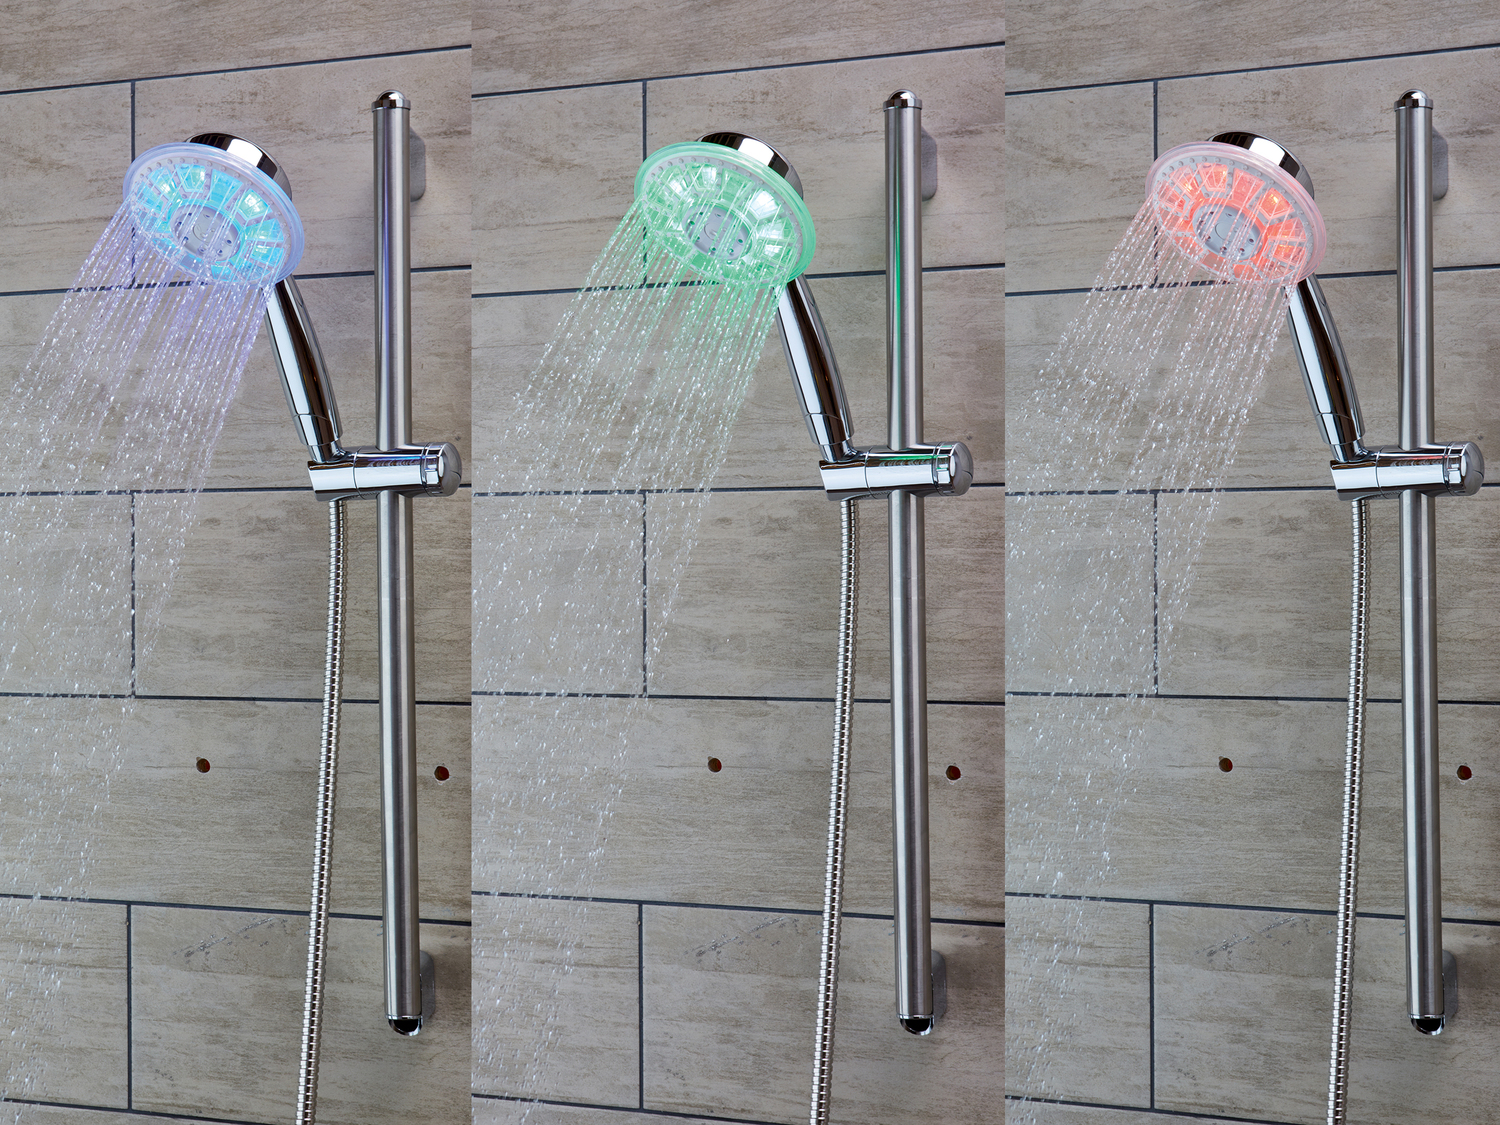 Pommeau de douche à LED , le prix 9.99 € 
- Corps chromé
- 6 LED
- 2 types ...